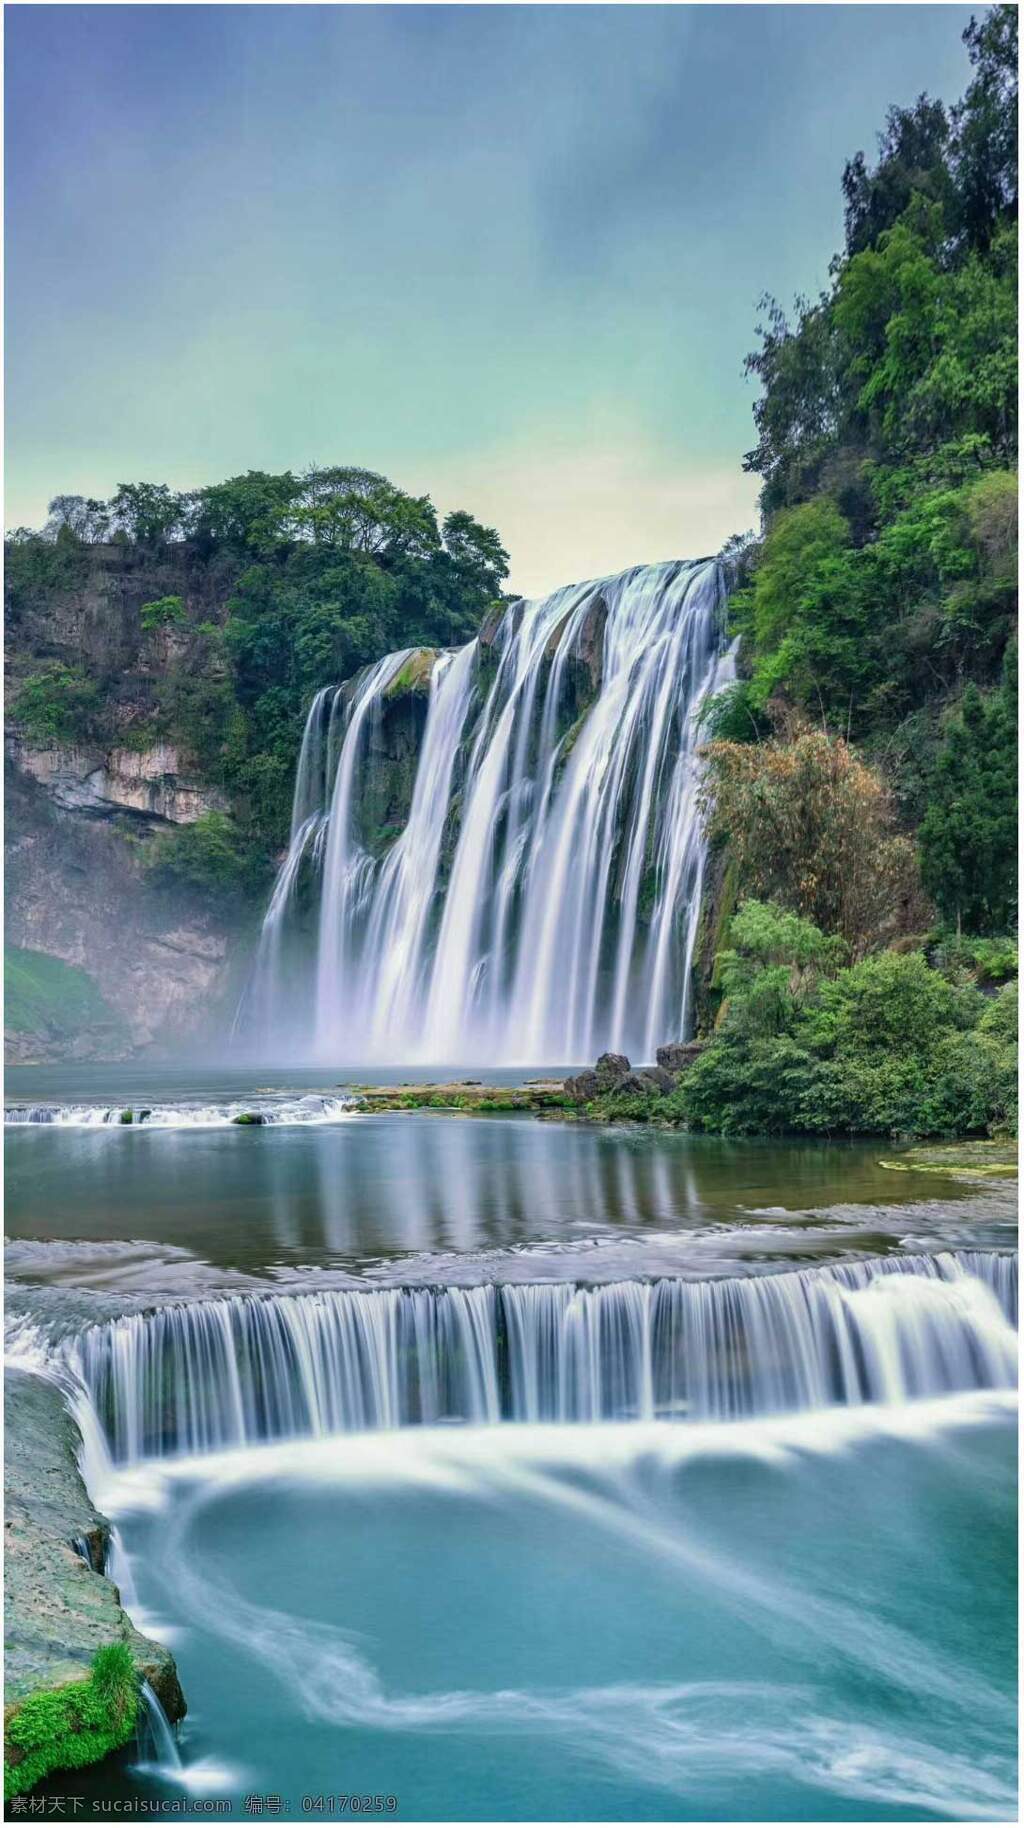 银白色的瀑布 绿山旁的瀑布 悬崖上的瀑布 春天的瀑布 美丽的瀑布 瀑布拍摄 瀑布旅游 自然景观 山水风景